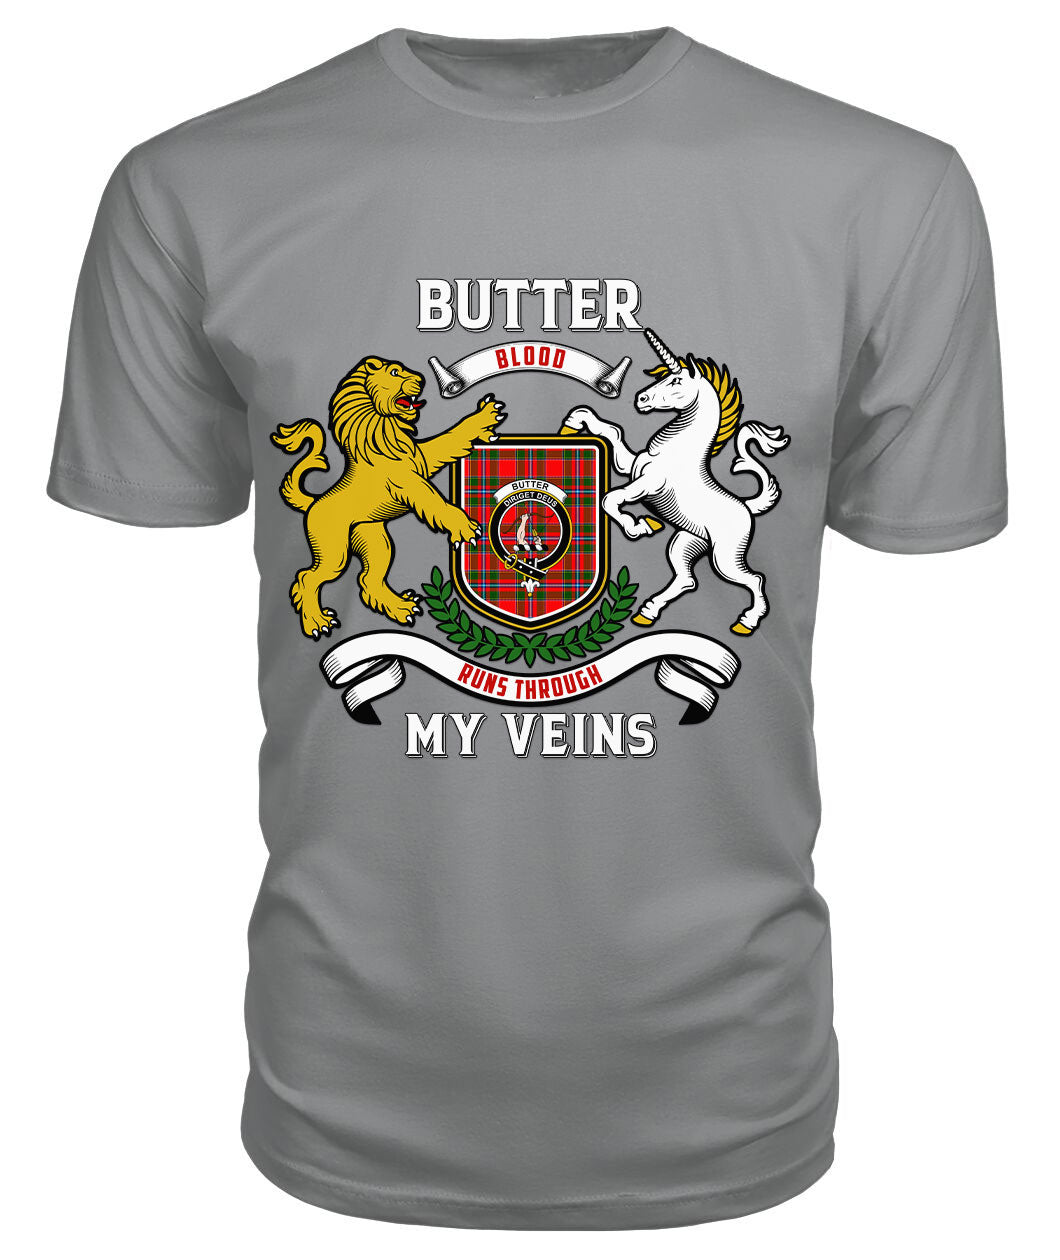 Butter Tartan Crest 2D T-shirt - Blood Runs Through My Veins Style